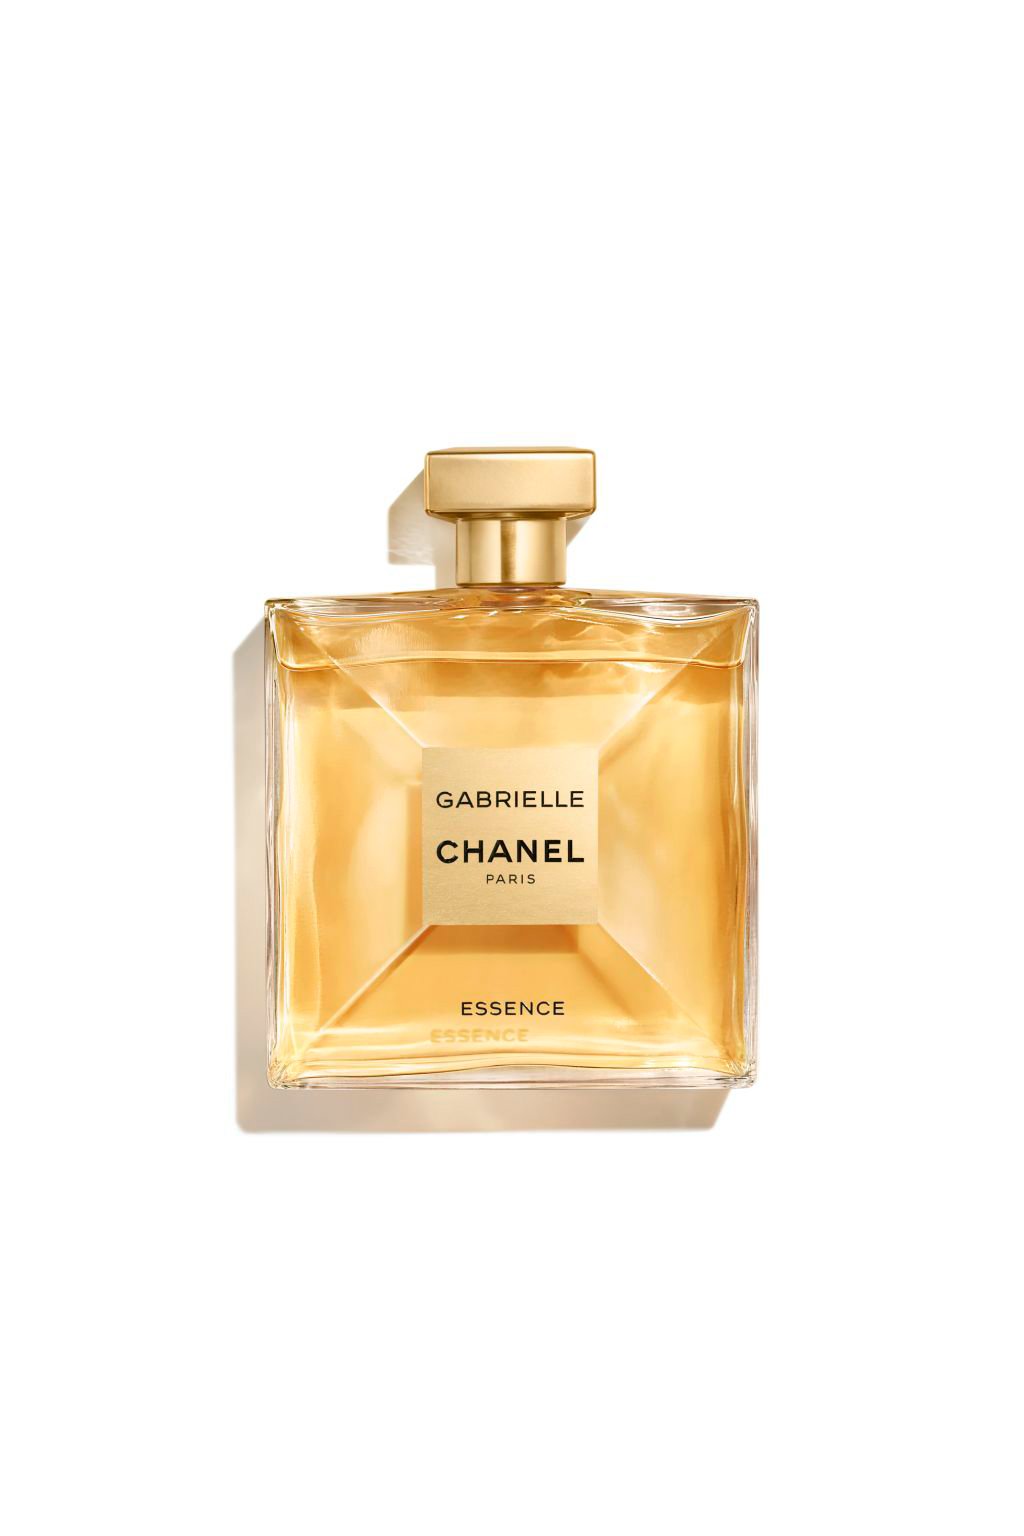 Chanel Gabrielle for Women Eau De Parfum Spray, 3.4 Ounce, 3.4 ounces  (3145891205251) : : Beauty & Personal Care